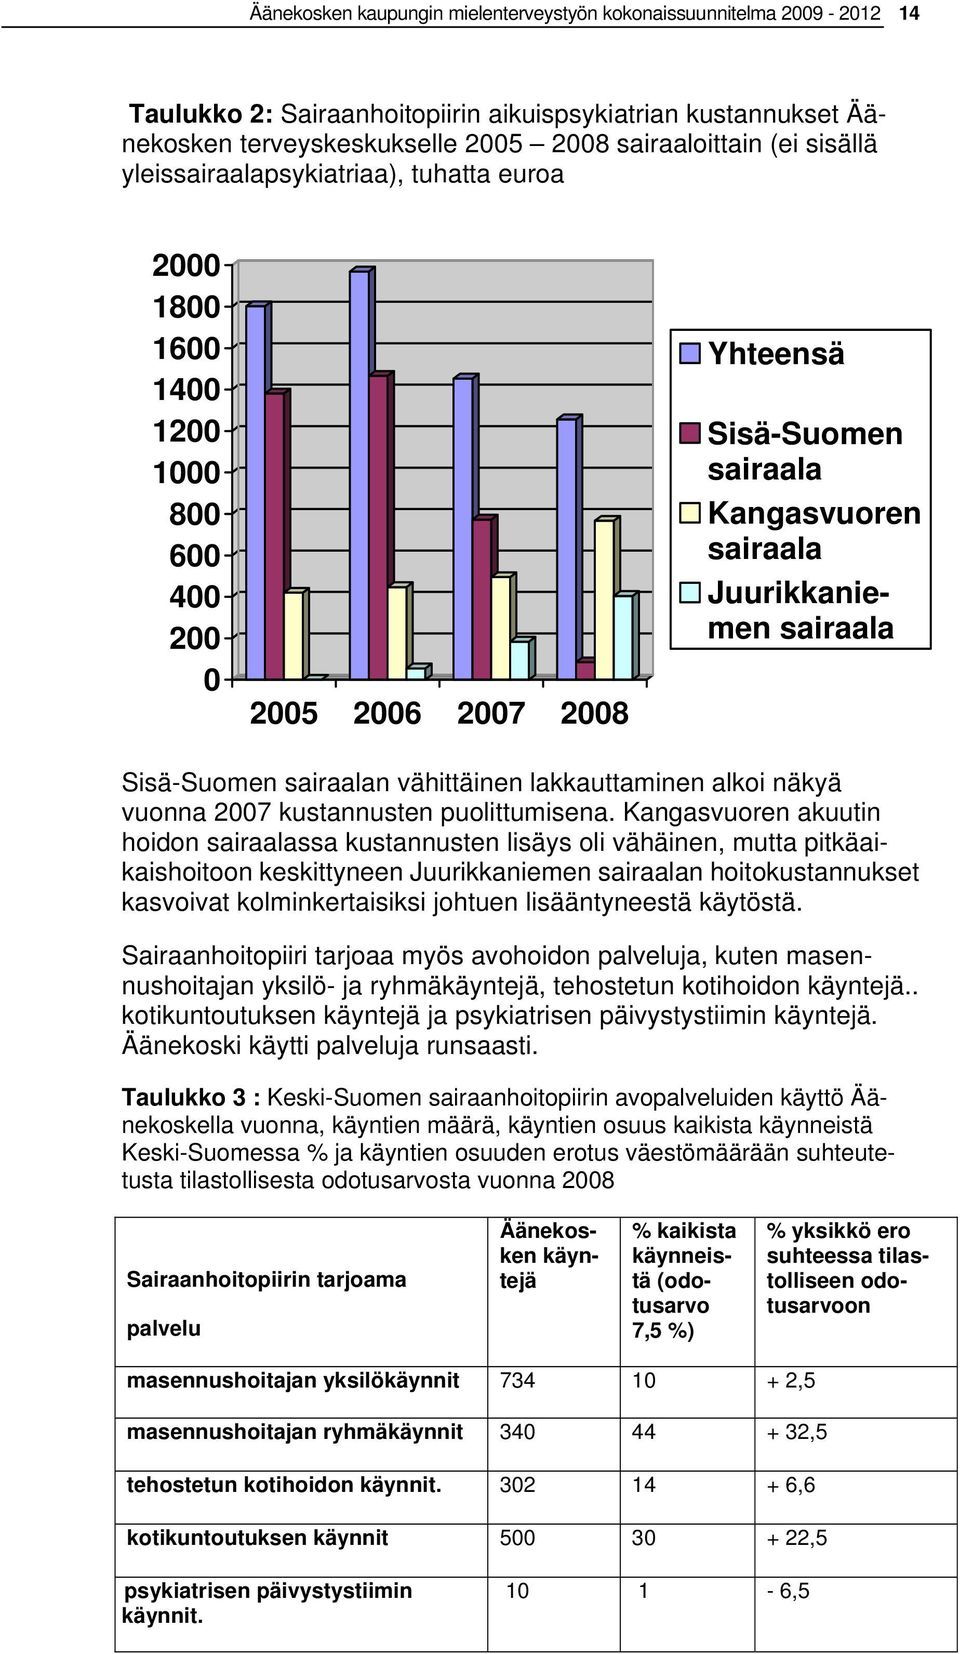 Sisä-Suomen sairaalan vähittäinen lakkauttaminen alkoi näkyä vuonna 2007 kustannusten puolittumisena.